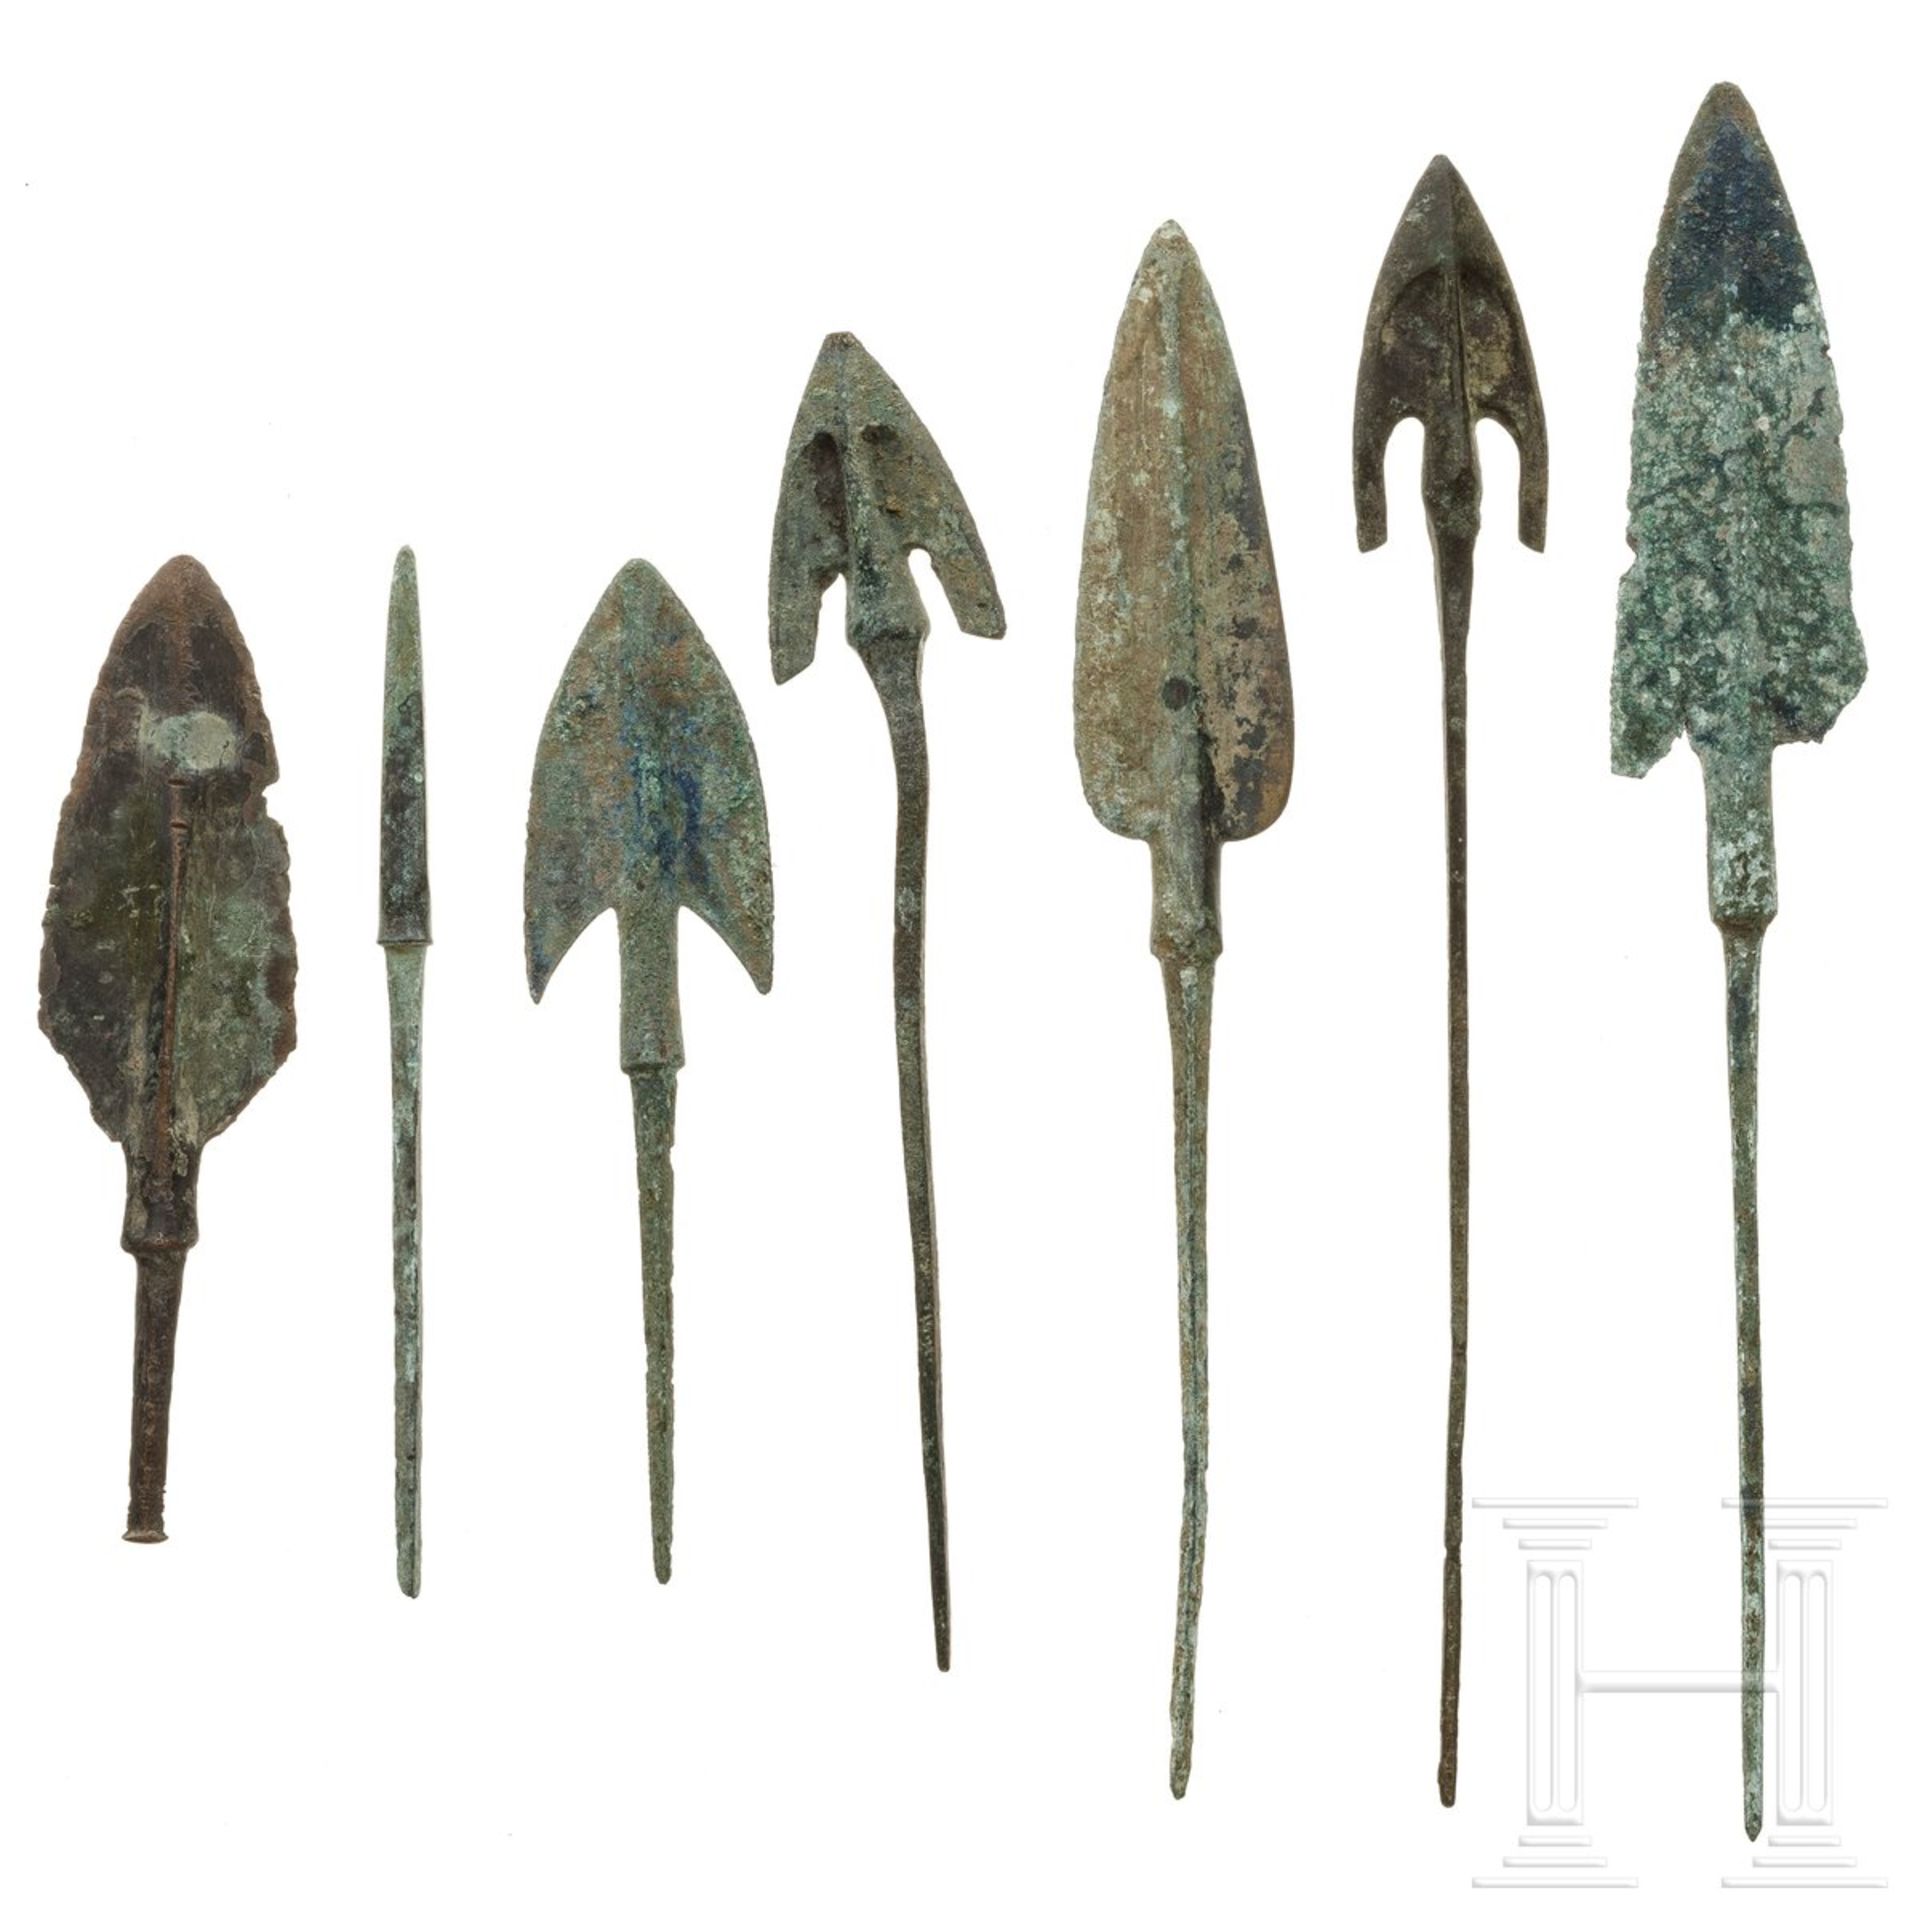 Sieben Pfeilspitzen, Bronze, Vorderasien, ca. 1000 v. Chr. - Image 3 of 3